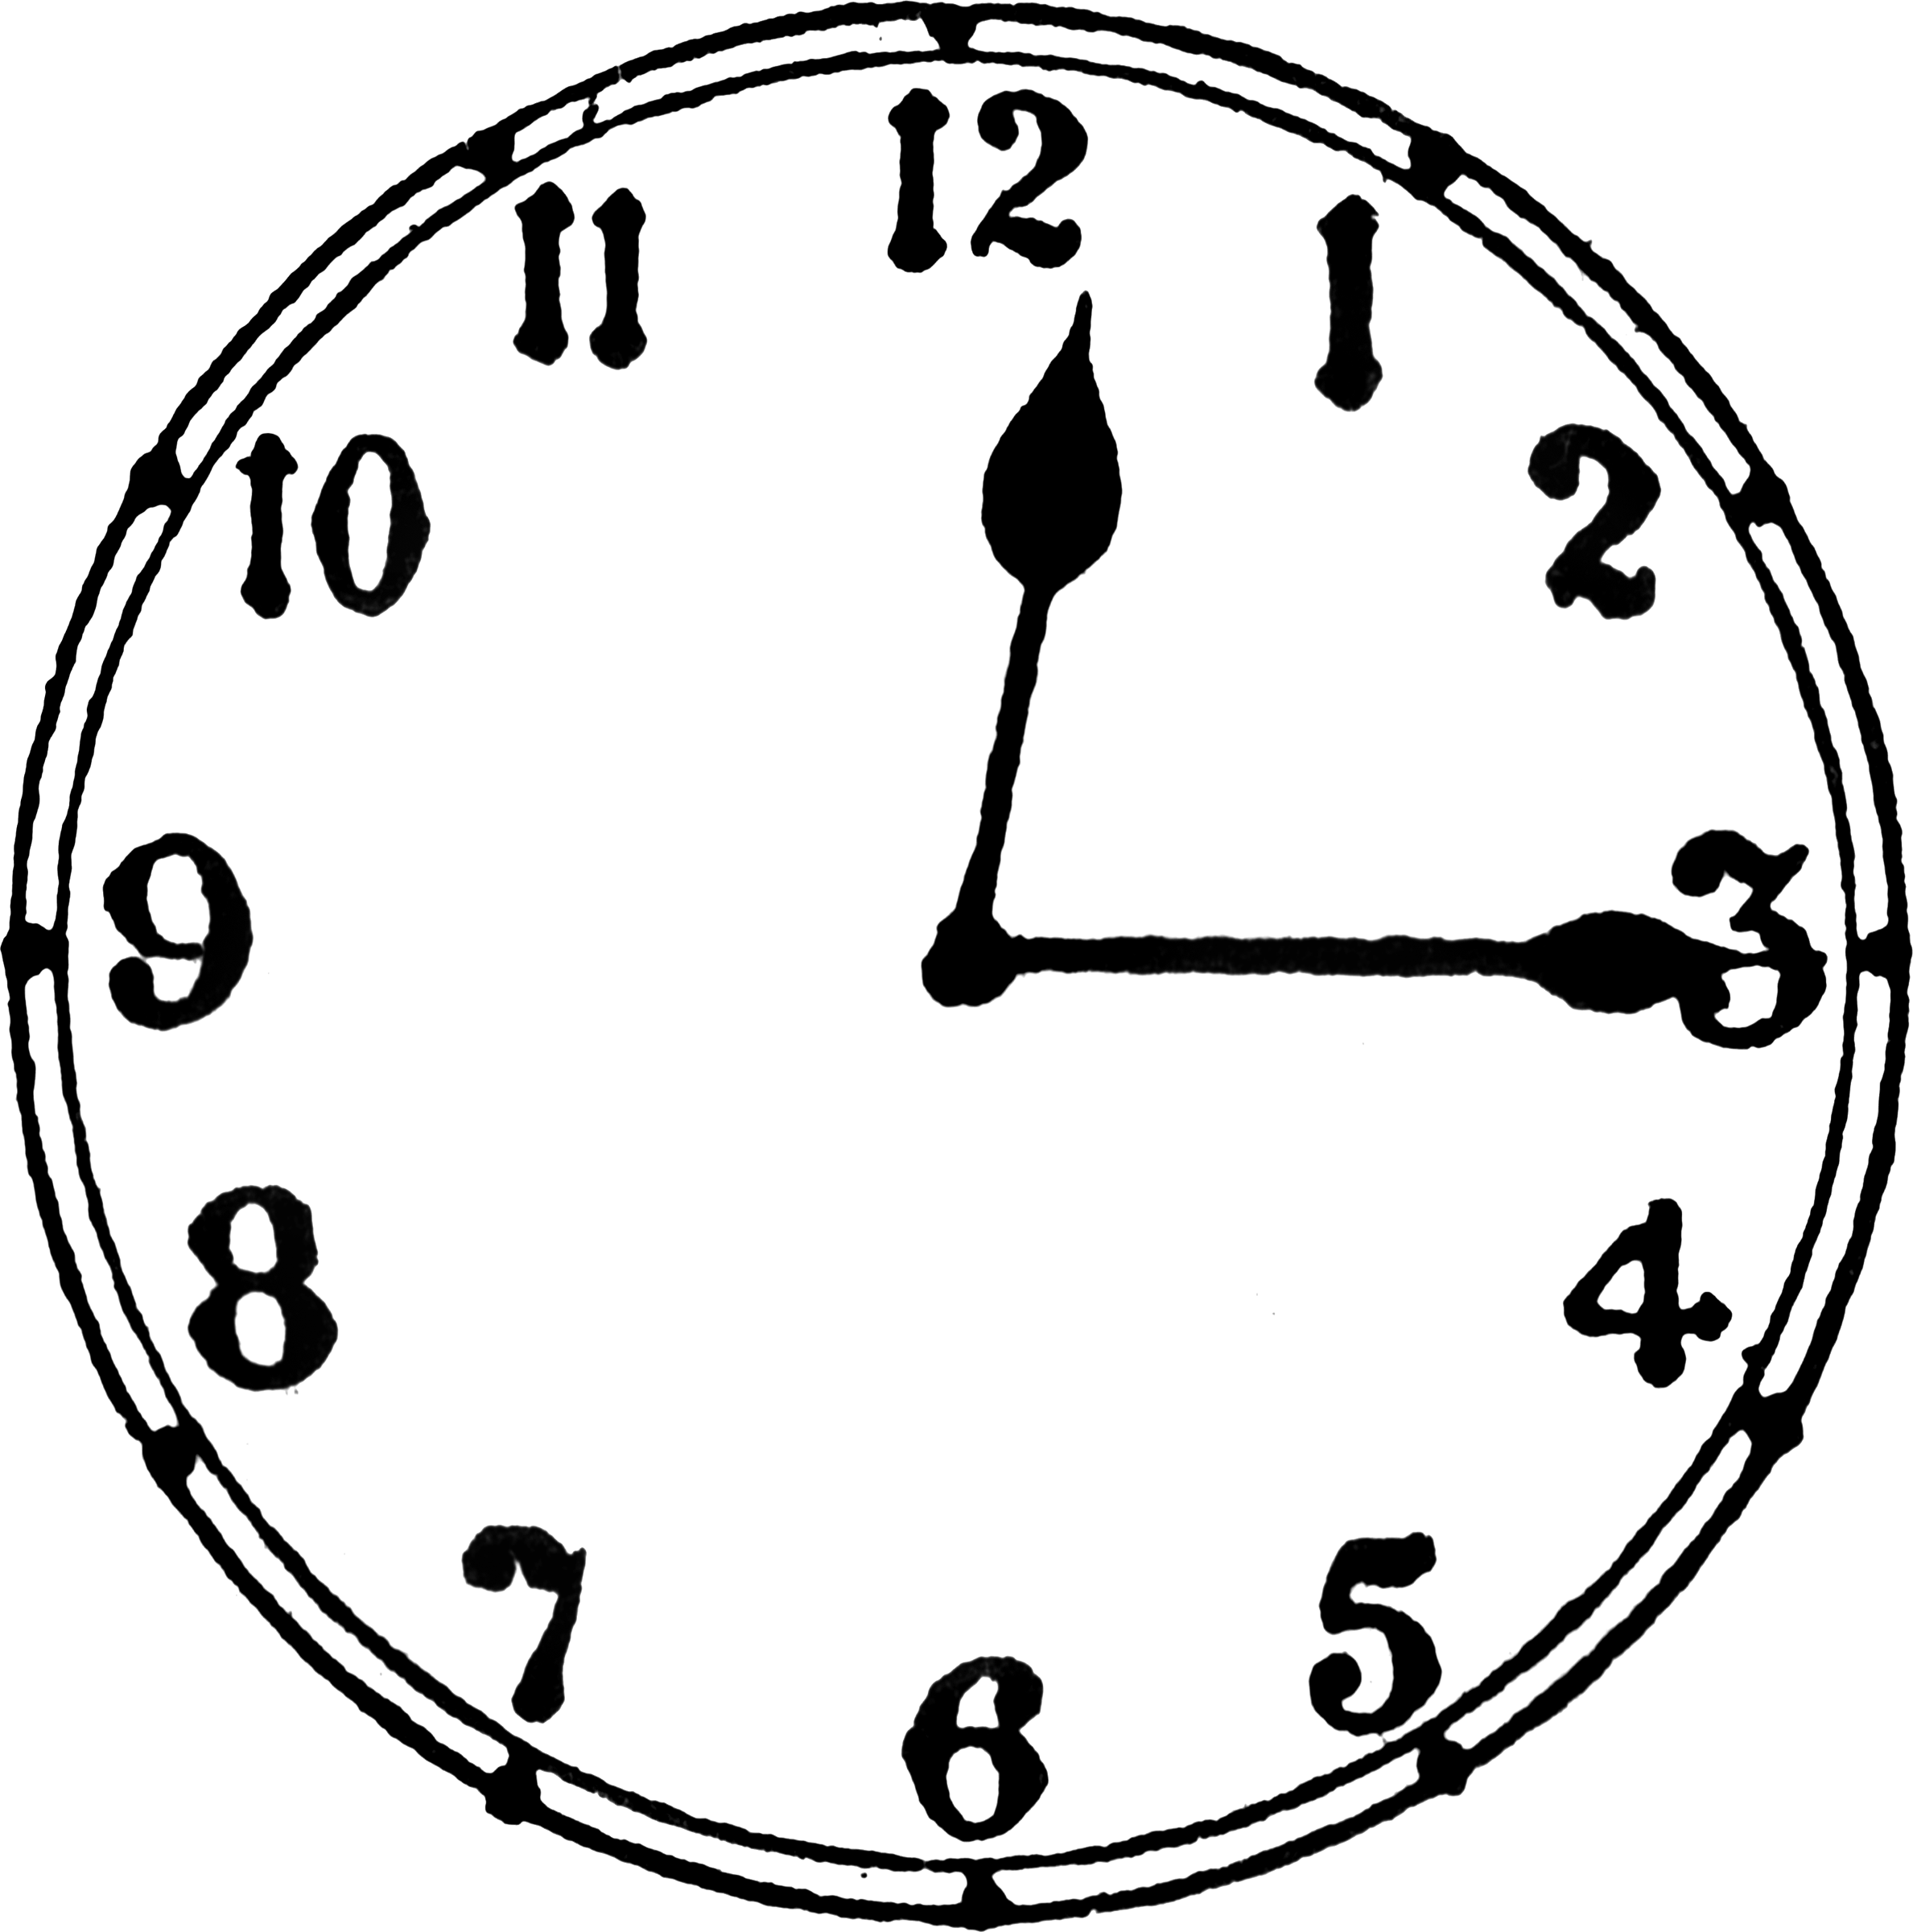 12 часов 17.03. Часы 12:15. Циферблат 12 часов 15 минут. Часы рисунок циферблат. 12 Часов 15 минут на часах.